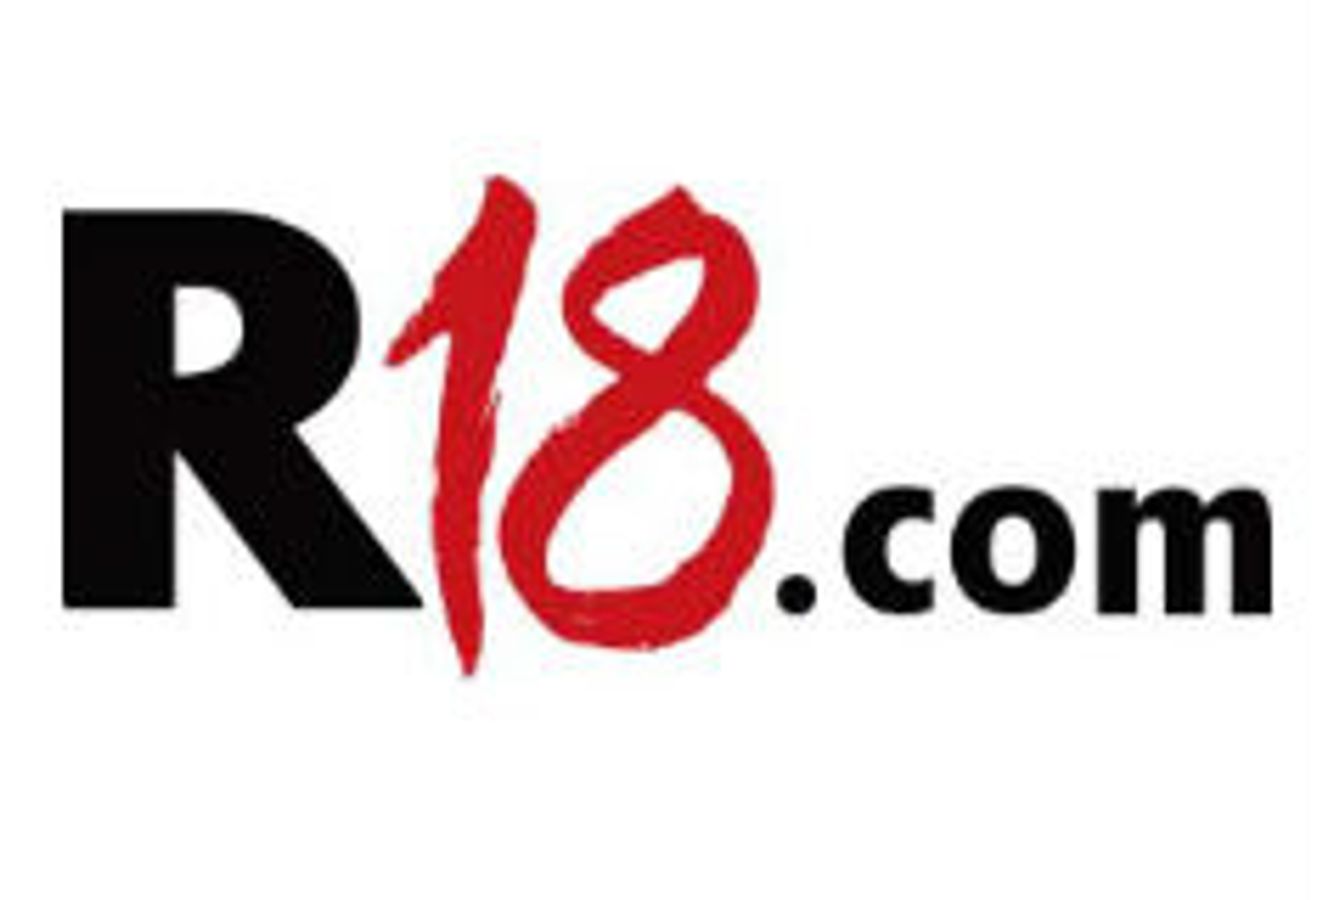 R18.com